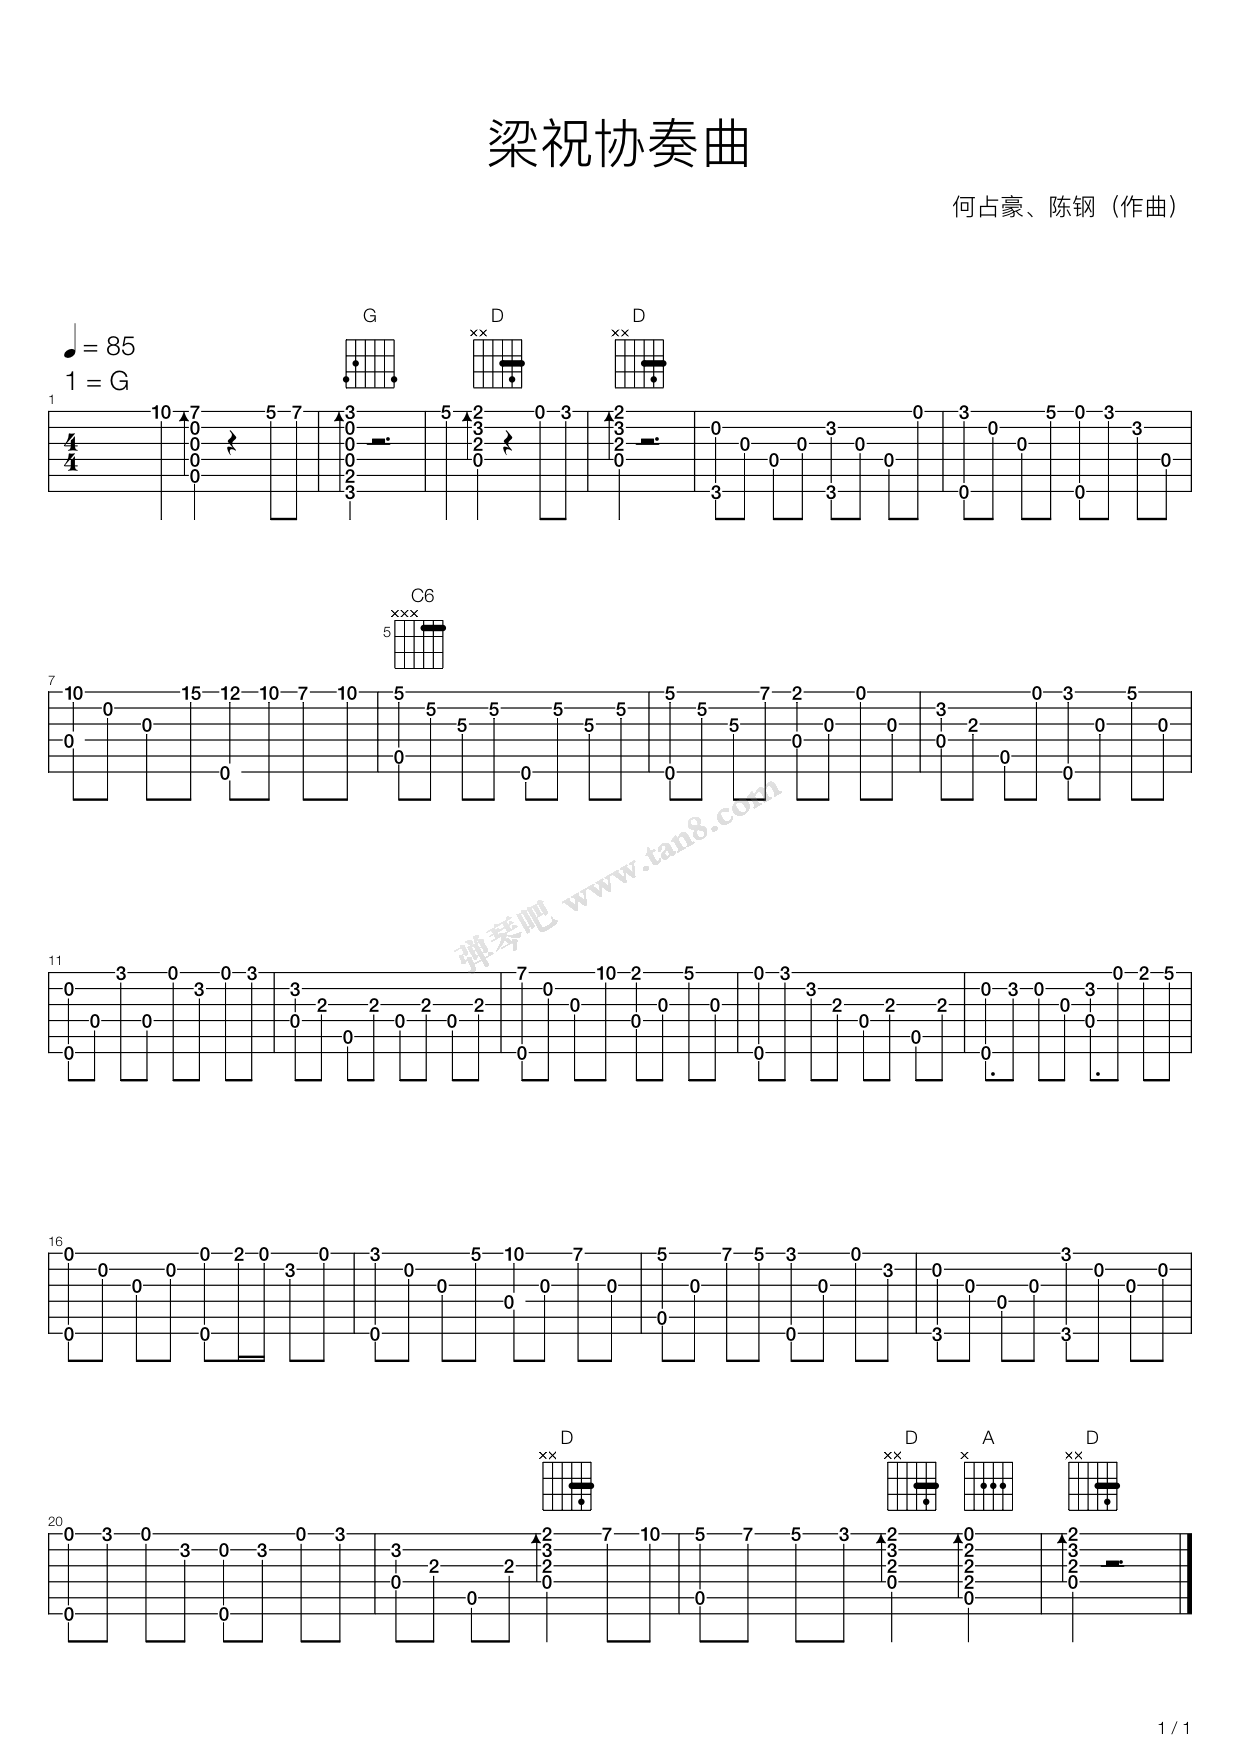 梁祝-簡單版雙手簡譜預覽-EOP線上樂譜架